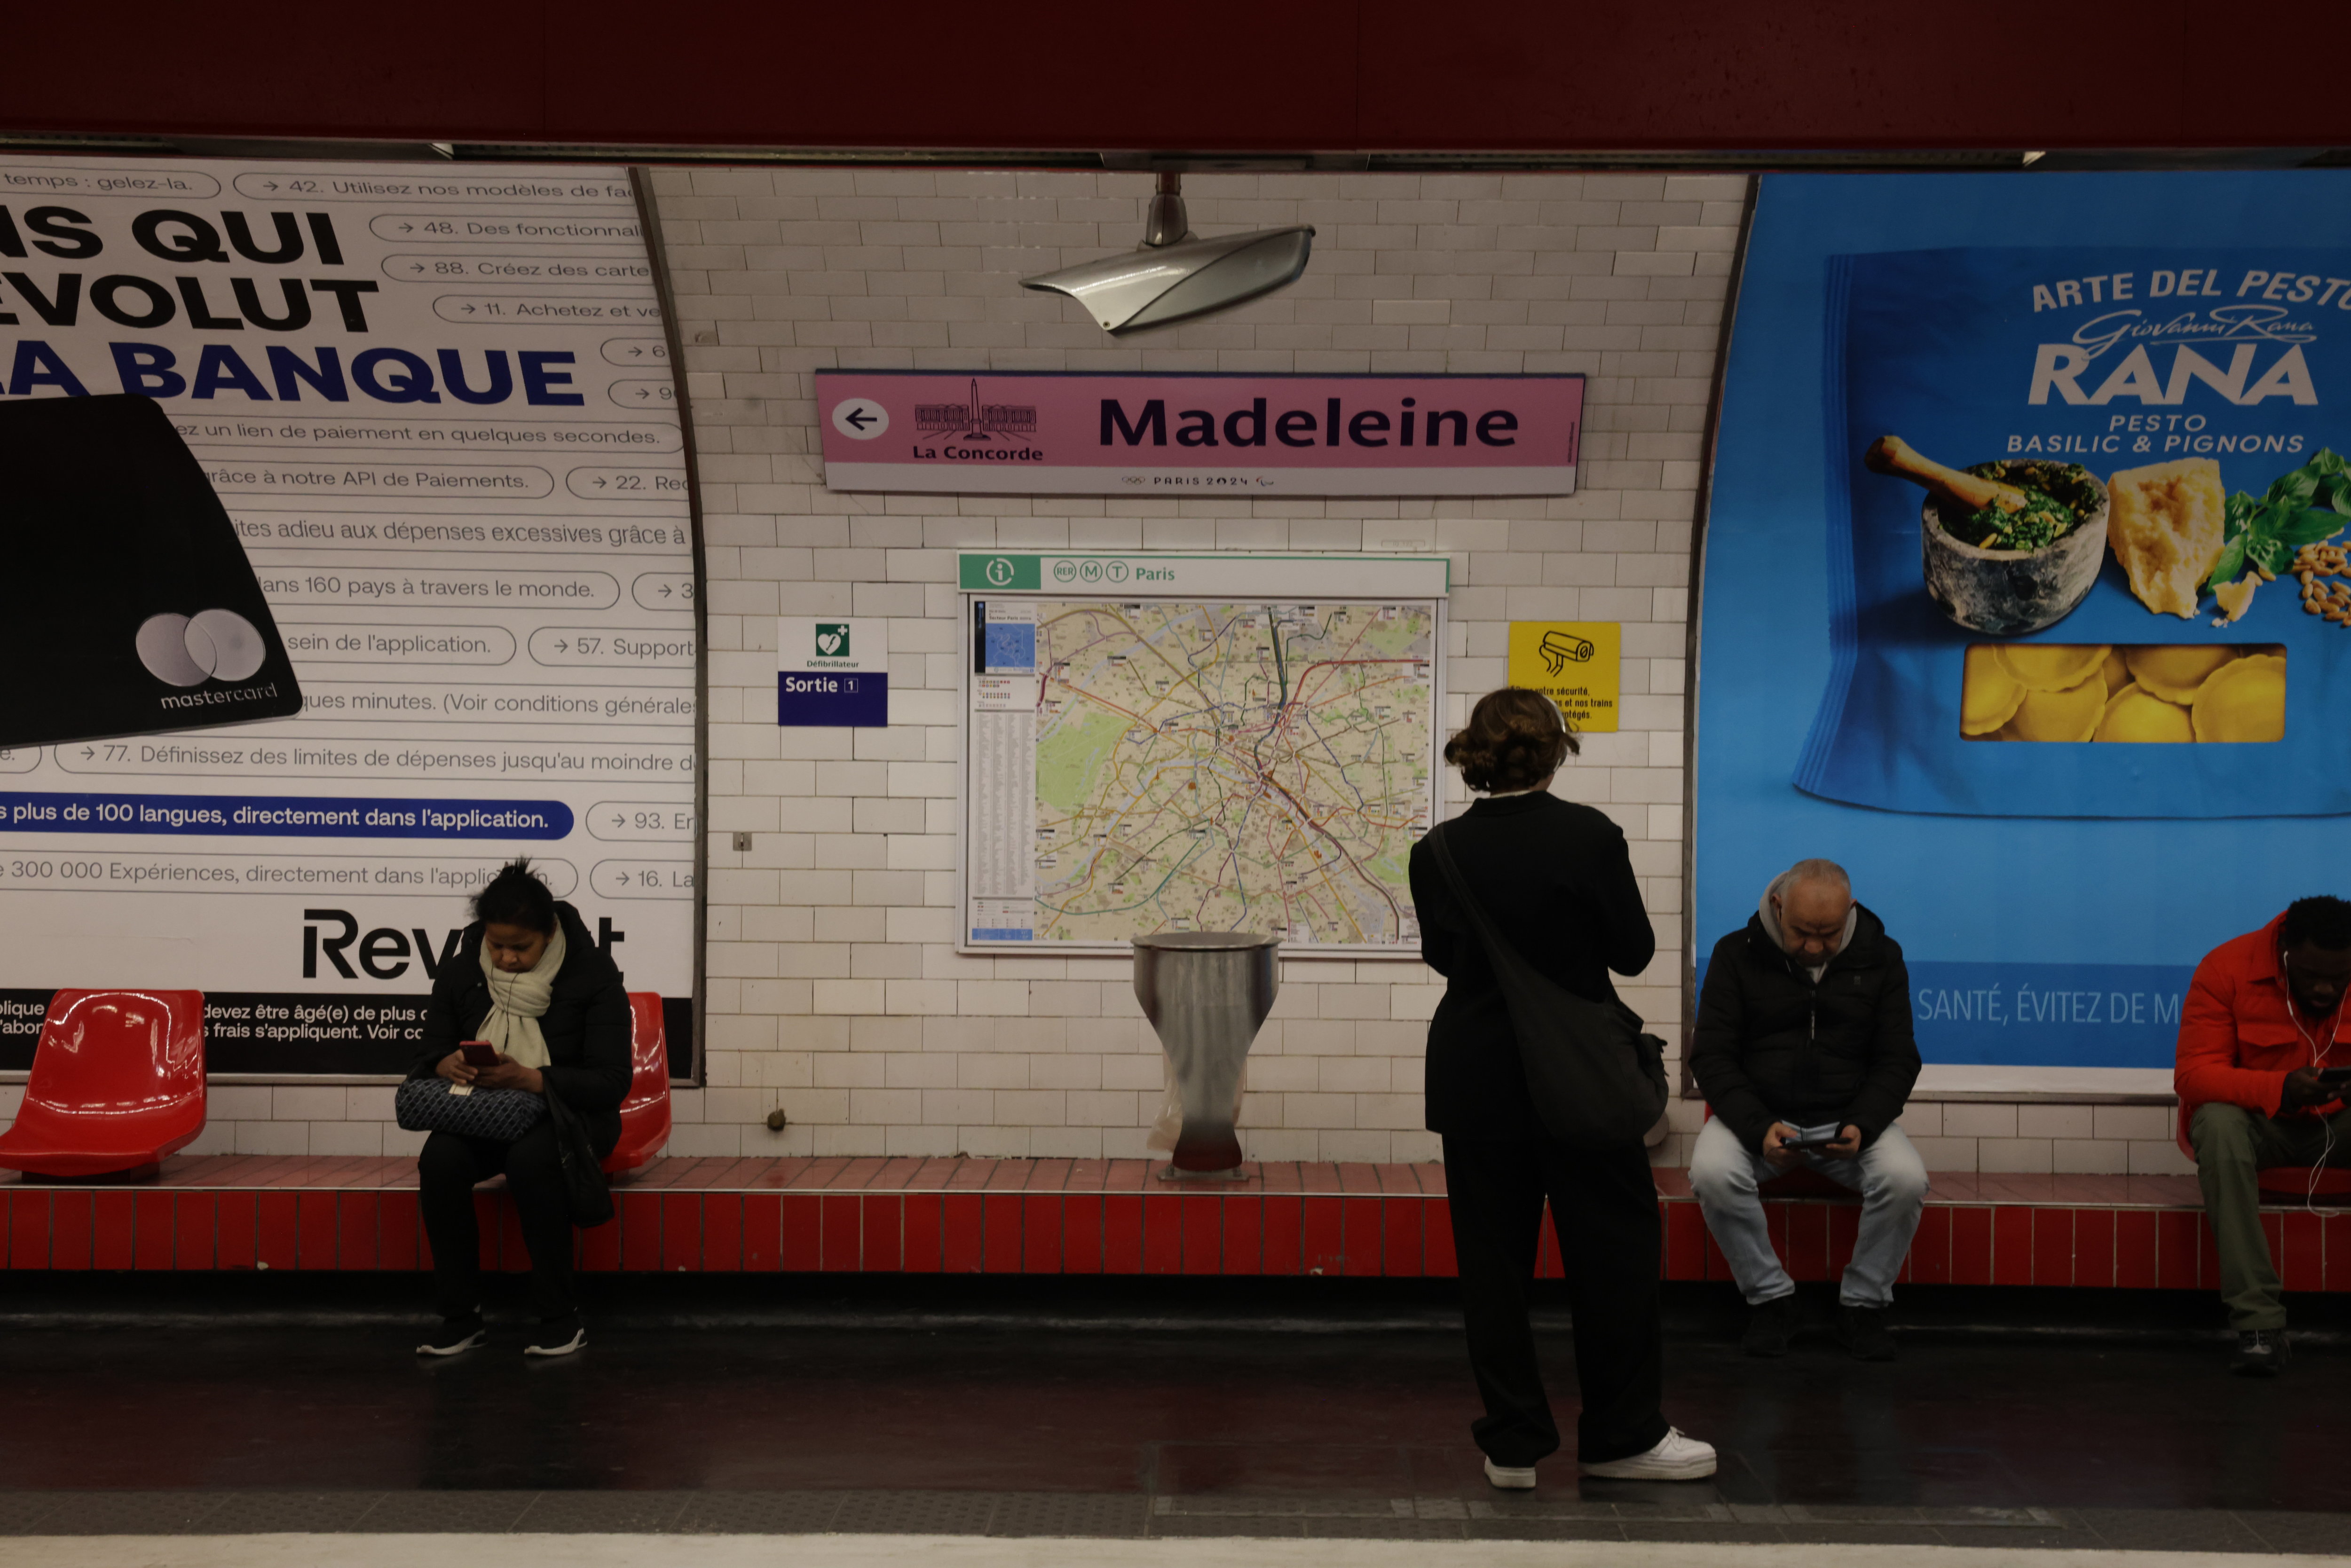 Paris, mercredi 24 avril. Des panneaux roses habillent la station Madeleine. C’est la couleur choisie pour la signalétique olympique. Et c’est ici qu’elle est testée pour le réseau du métro. LP/Olivier Arandel